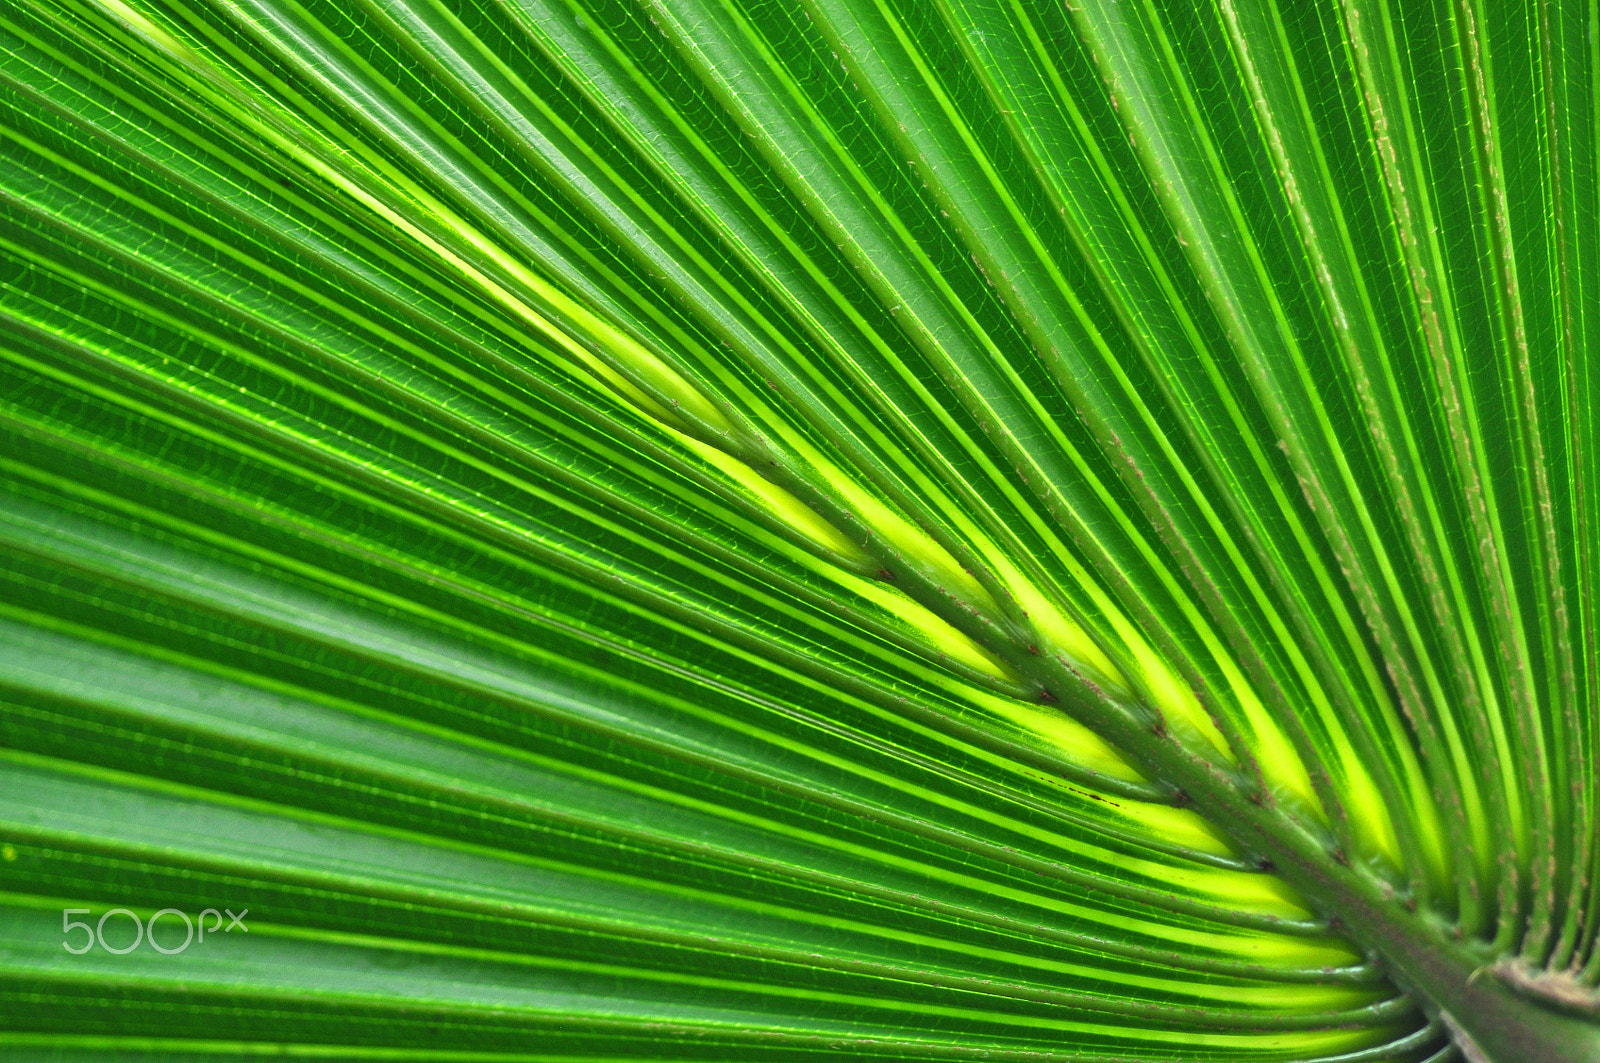 Nikon D90 + Nikon AF Micro-Nikkor 60mm F2.8D sample photo. Green palm leaf background photography